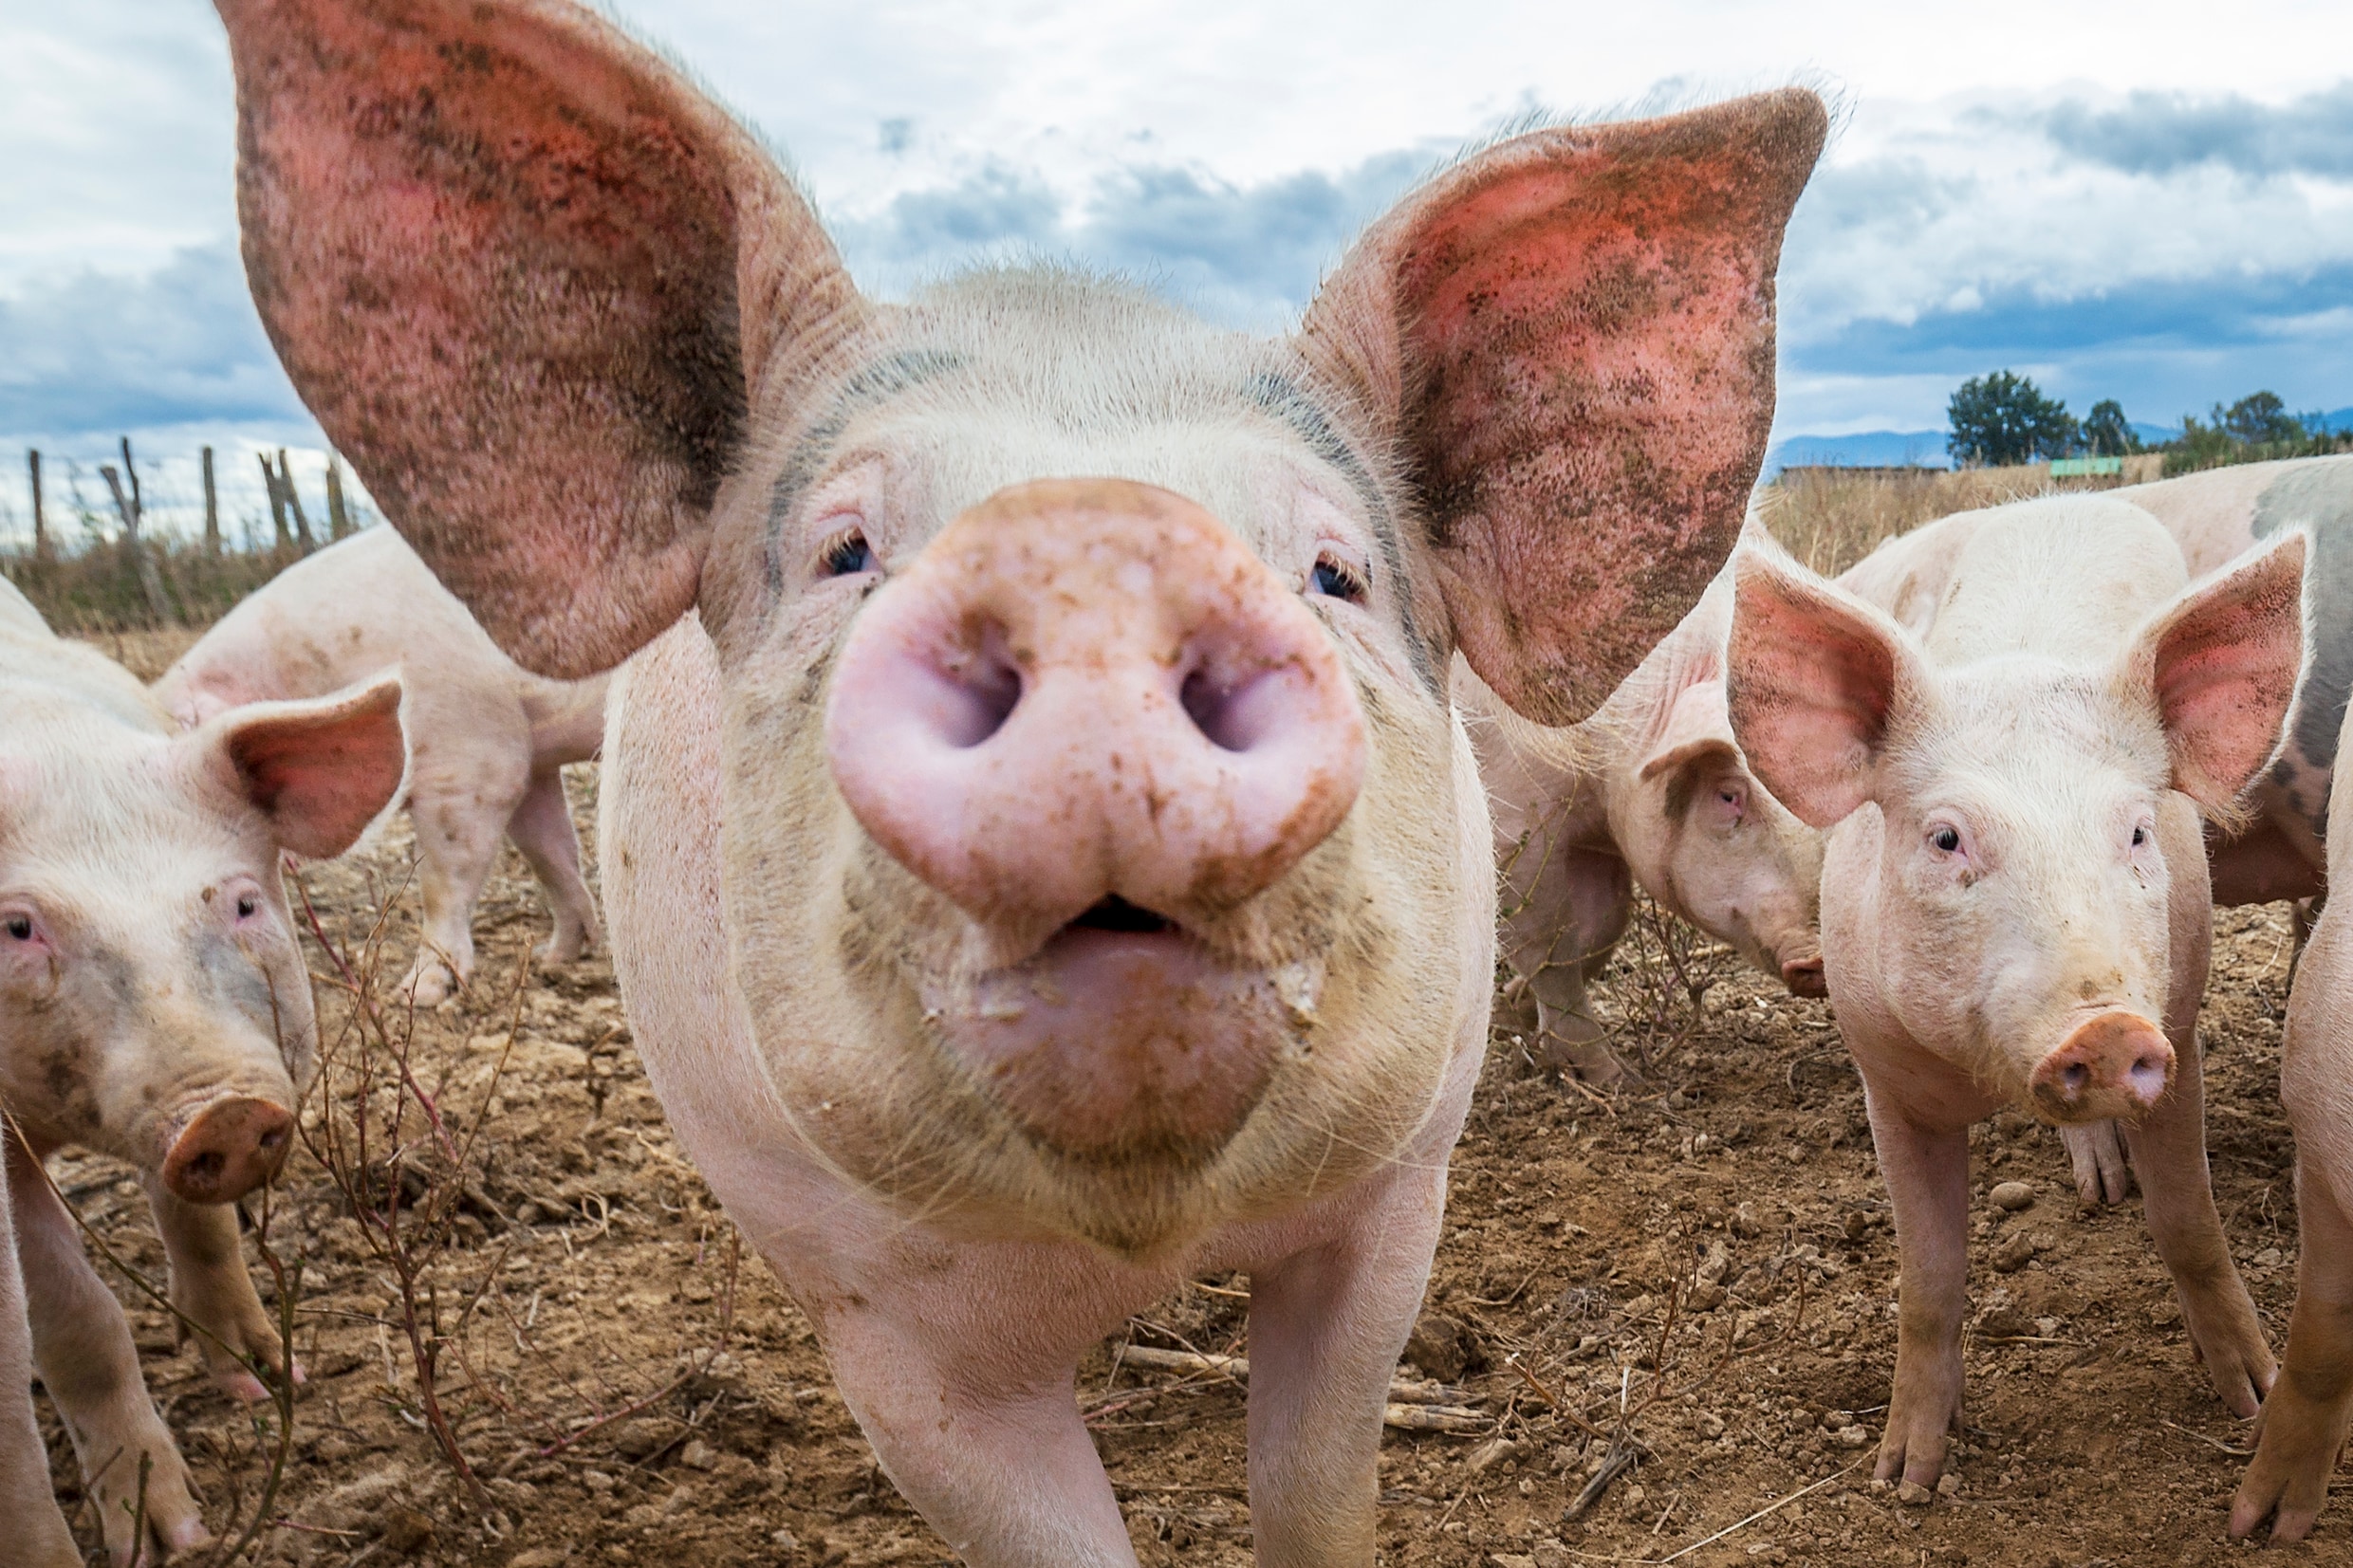 Hoe China de Belgische regering onder druk zet over 5G: varkensvlees als opmerkelijke pasmunt